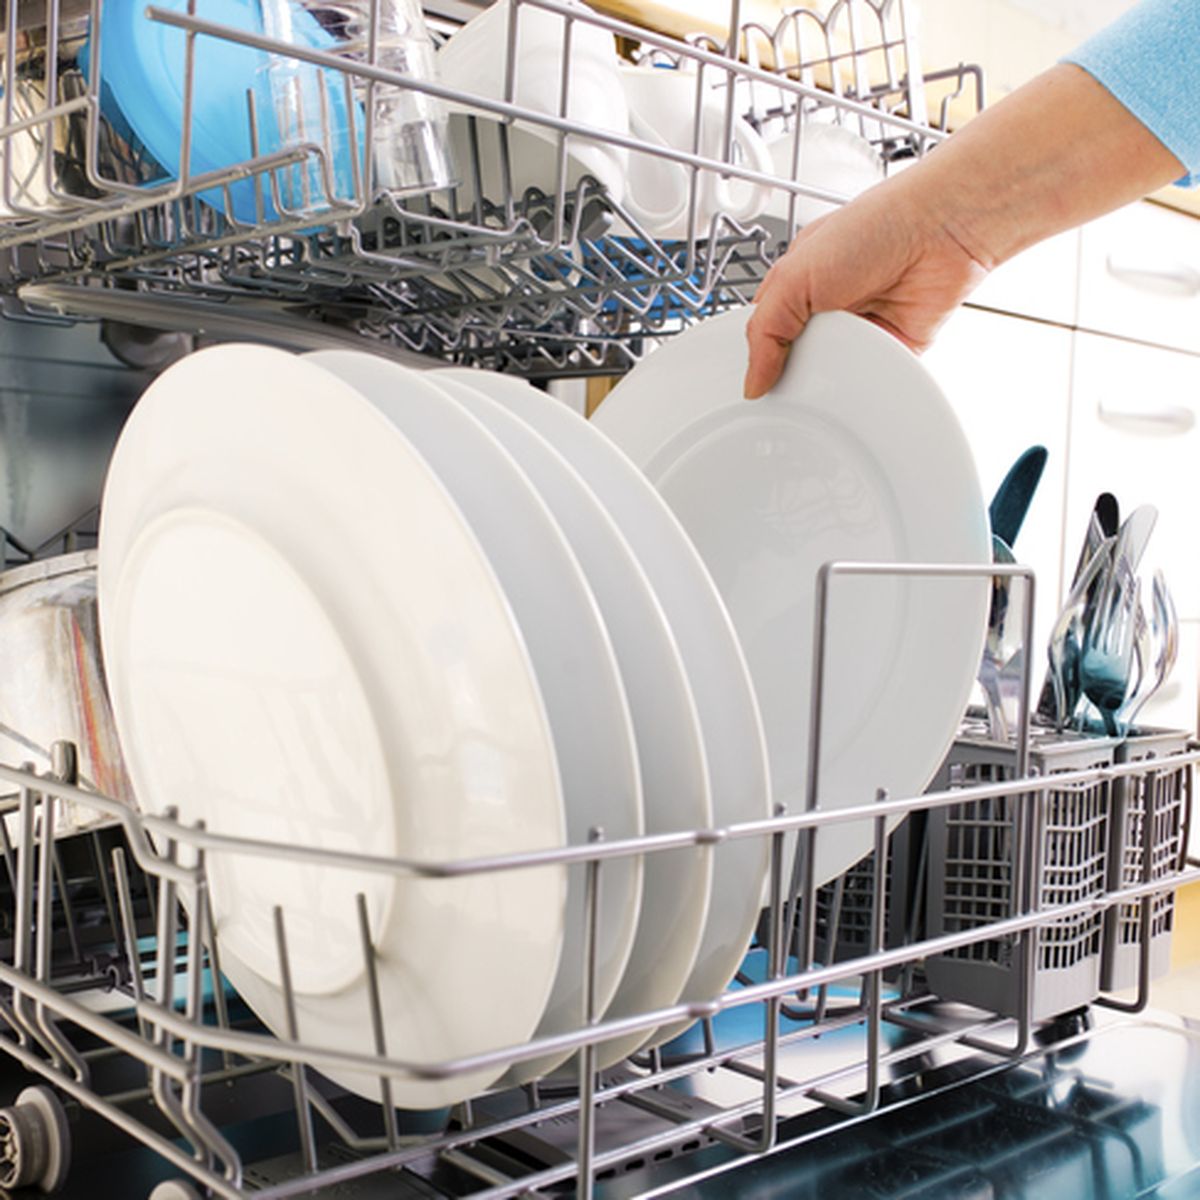 10 cosas que no sabías que se pueden lavar en el lavavajillas